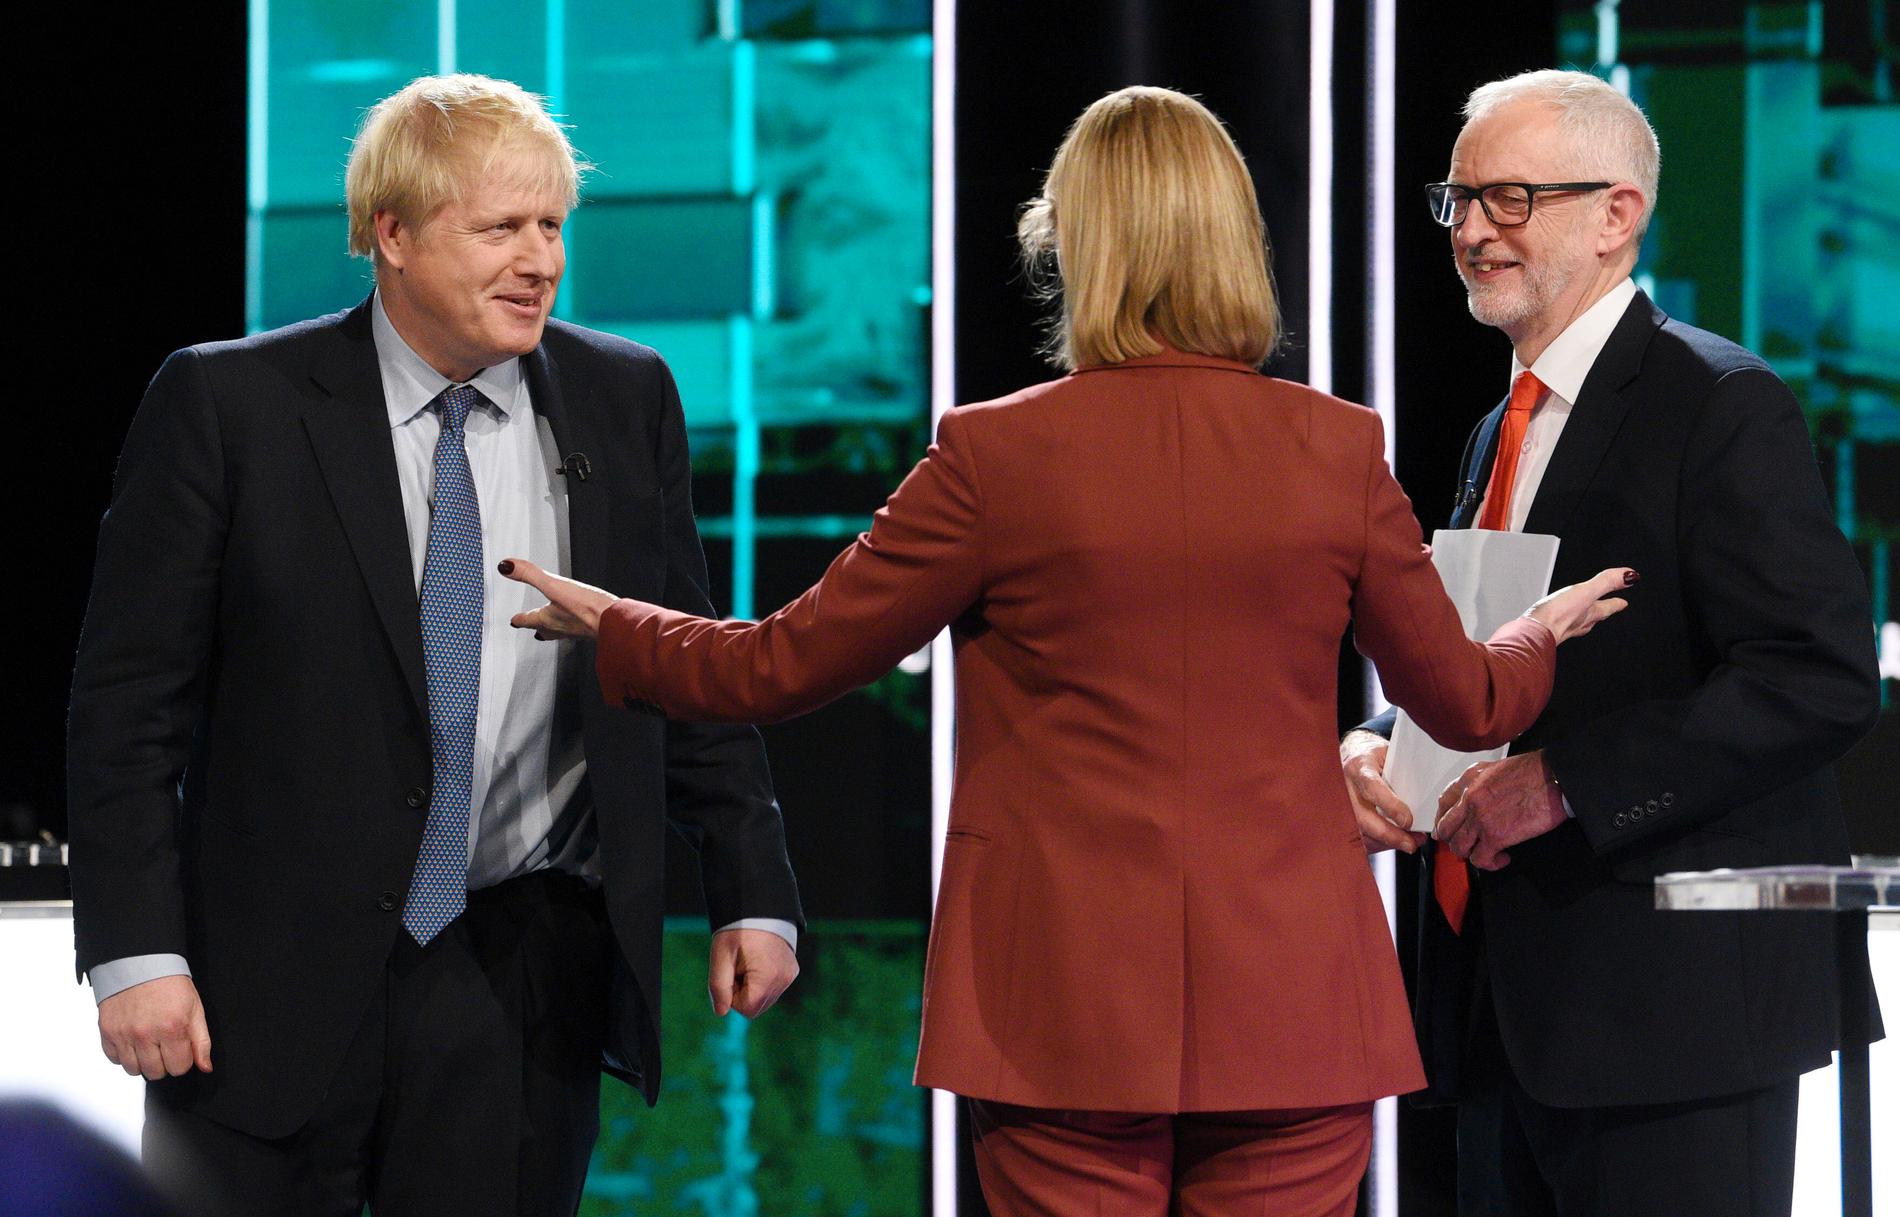 Tories ledare Boris Johnson och Labours partiledare Jeremy Corbyn (höger) möttes i en tv-sänd debatt, ledd av journalisten Julie Etchingham i tv-kanalen ITV. Debatten hölls i Salford, Manchester i England.